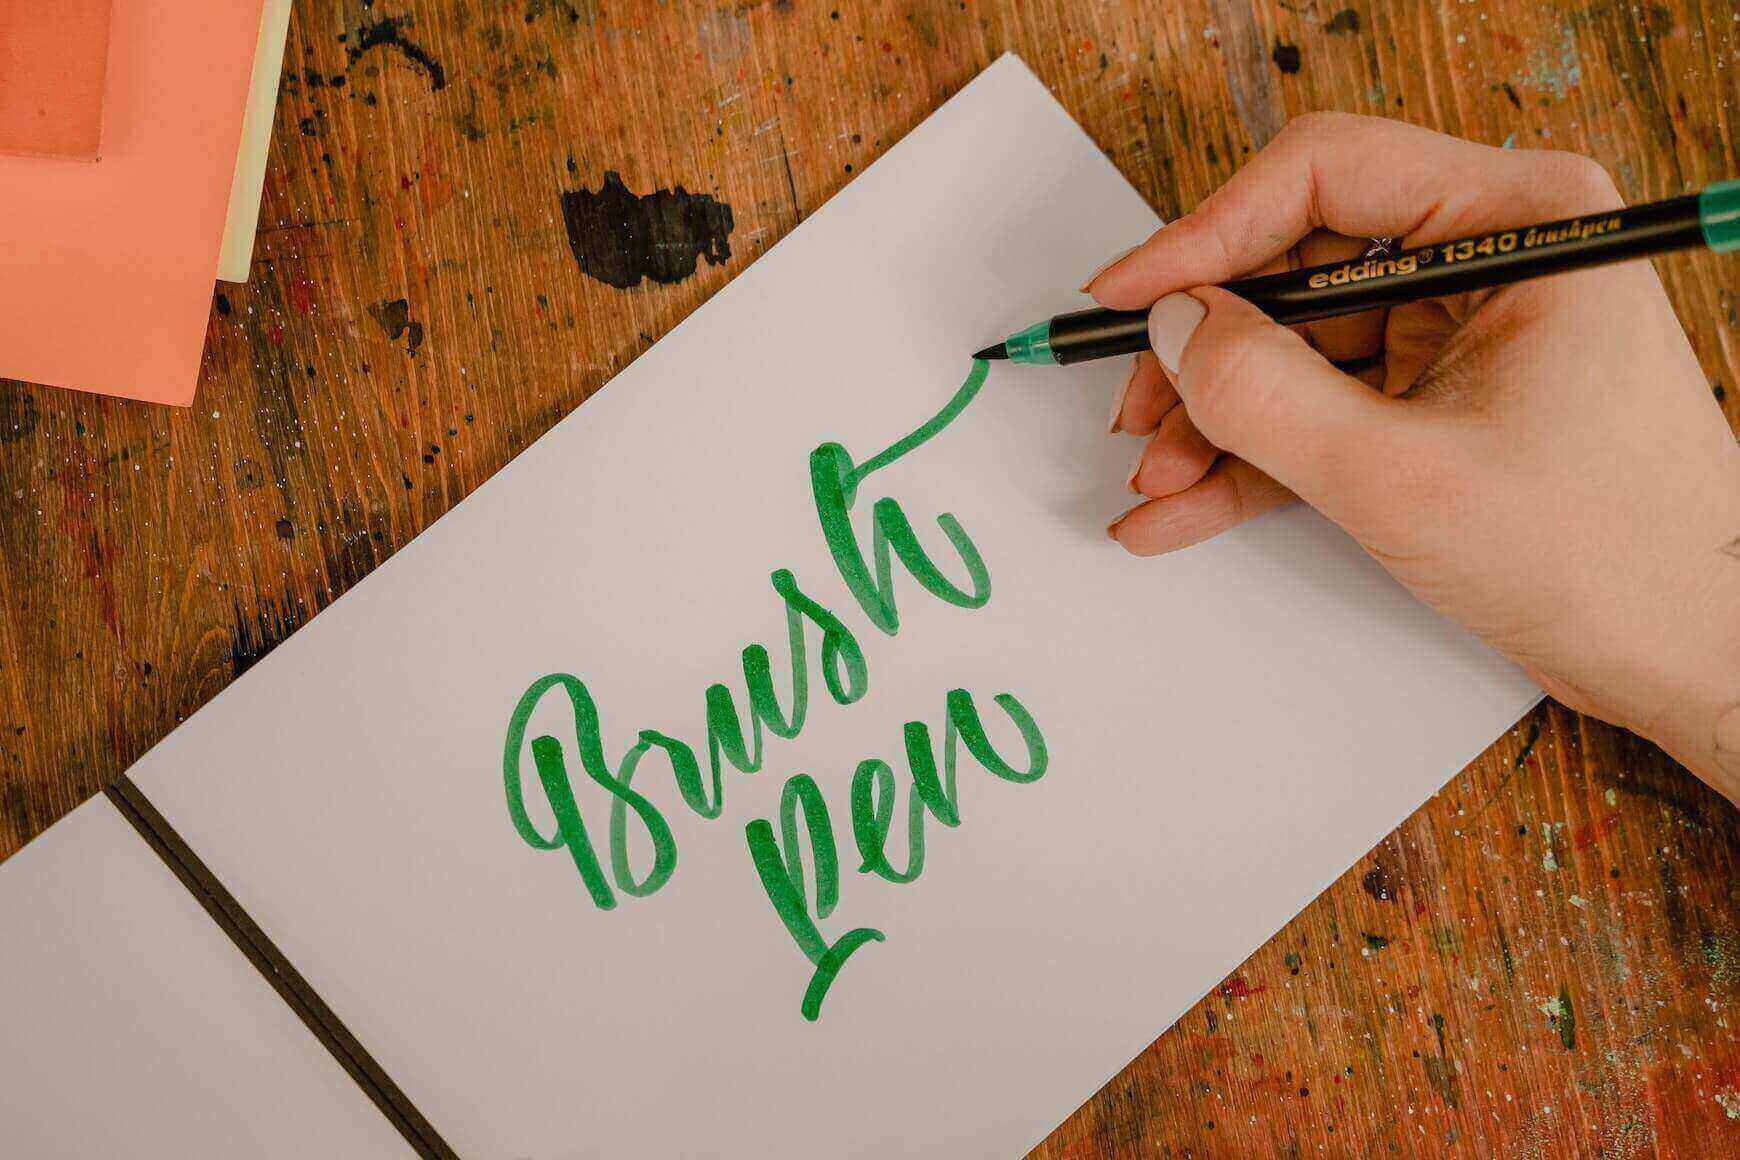 Textul brush pen scris cu verde pe o foaie alba cu un stilou pensula